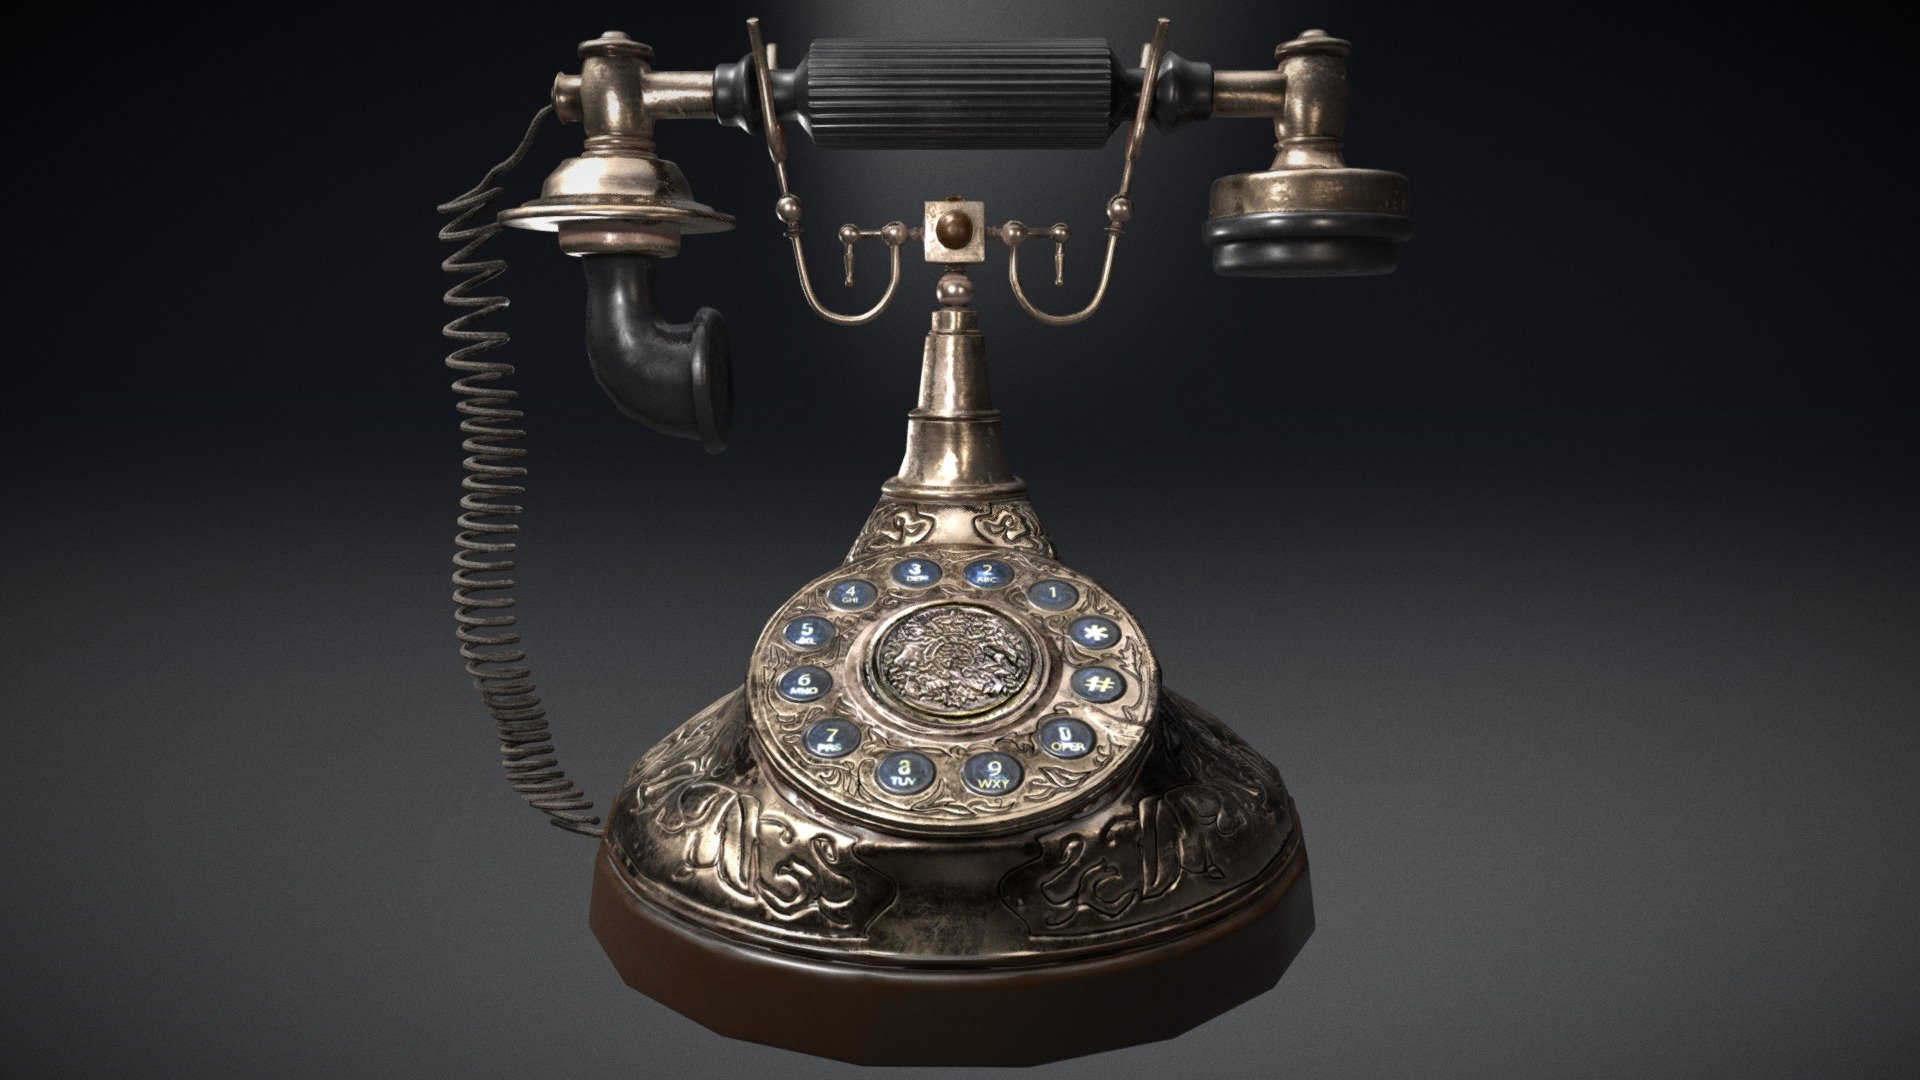 Antique Phone Re-textured